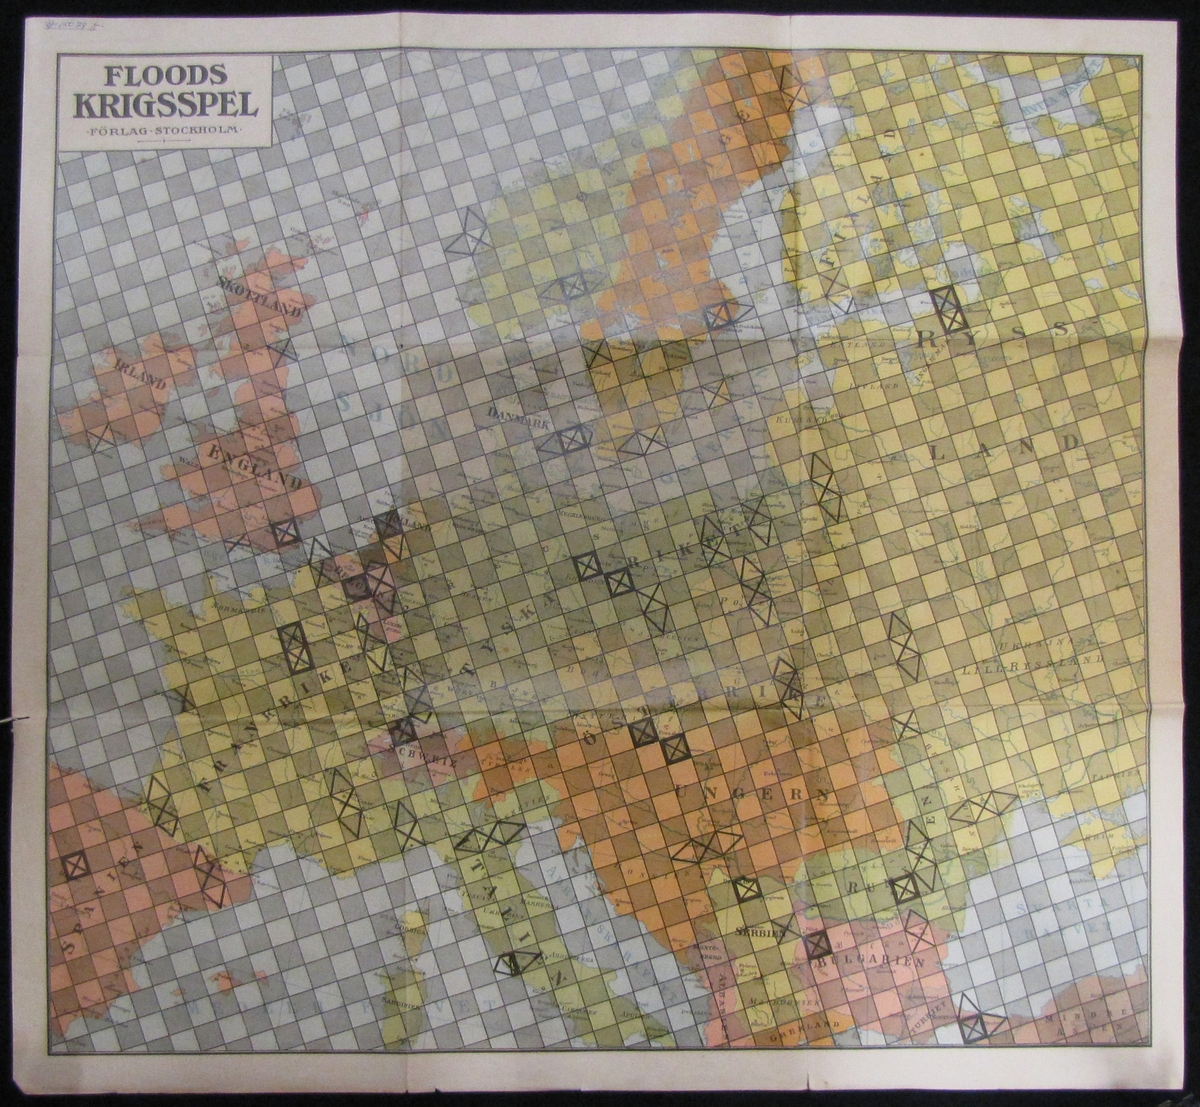 Sällskapsspel tillverkat av ett pappersark. På arket finns en kartbild över stora delar av Europa. 
Spelet heter Floods krigsspel och spelas med pjäser för fransk-tyskt krig. Spelet kan spelas i tre olika sätt: som tärningsspelet, lilla spelet och stora spelet.
Instruktionshäfte  och prislista medföljer.
Spelpjäser finns separat i VM15080.
Ask saknas.